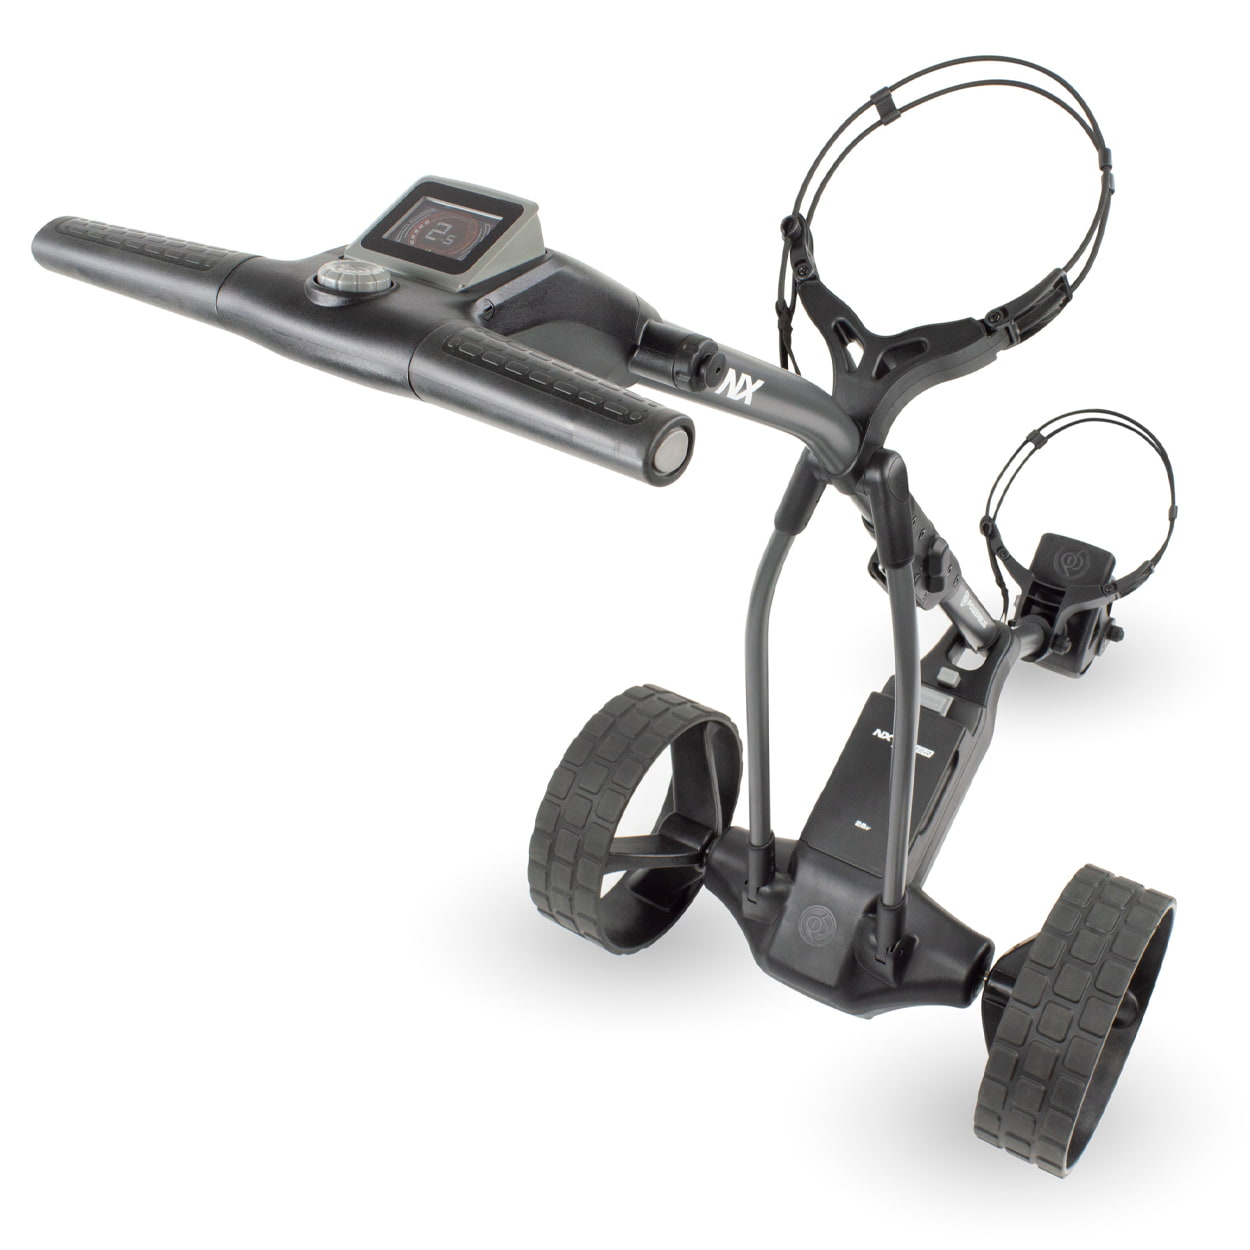 PowerBug NX Lithium golf trolley handle